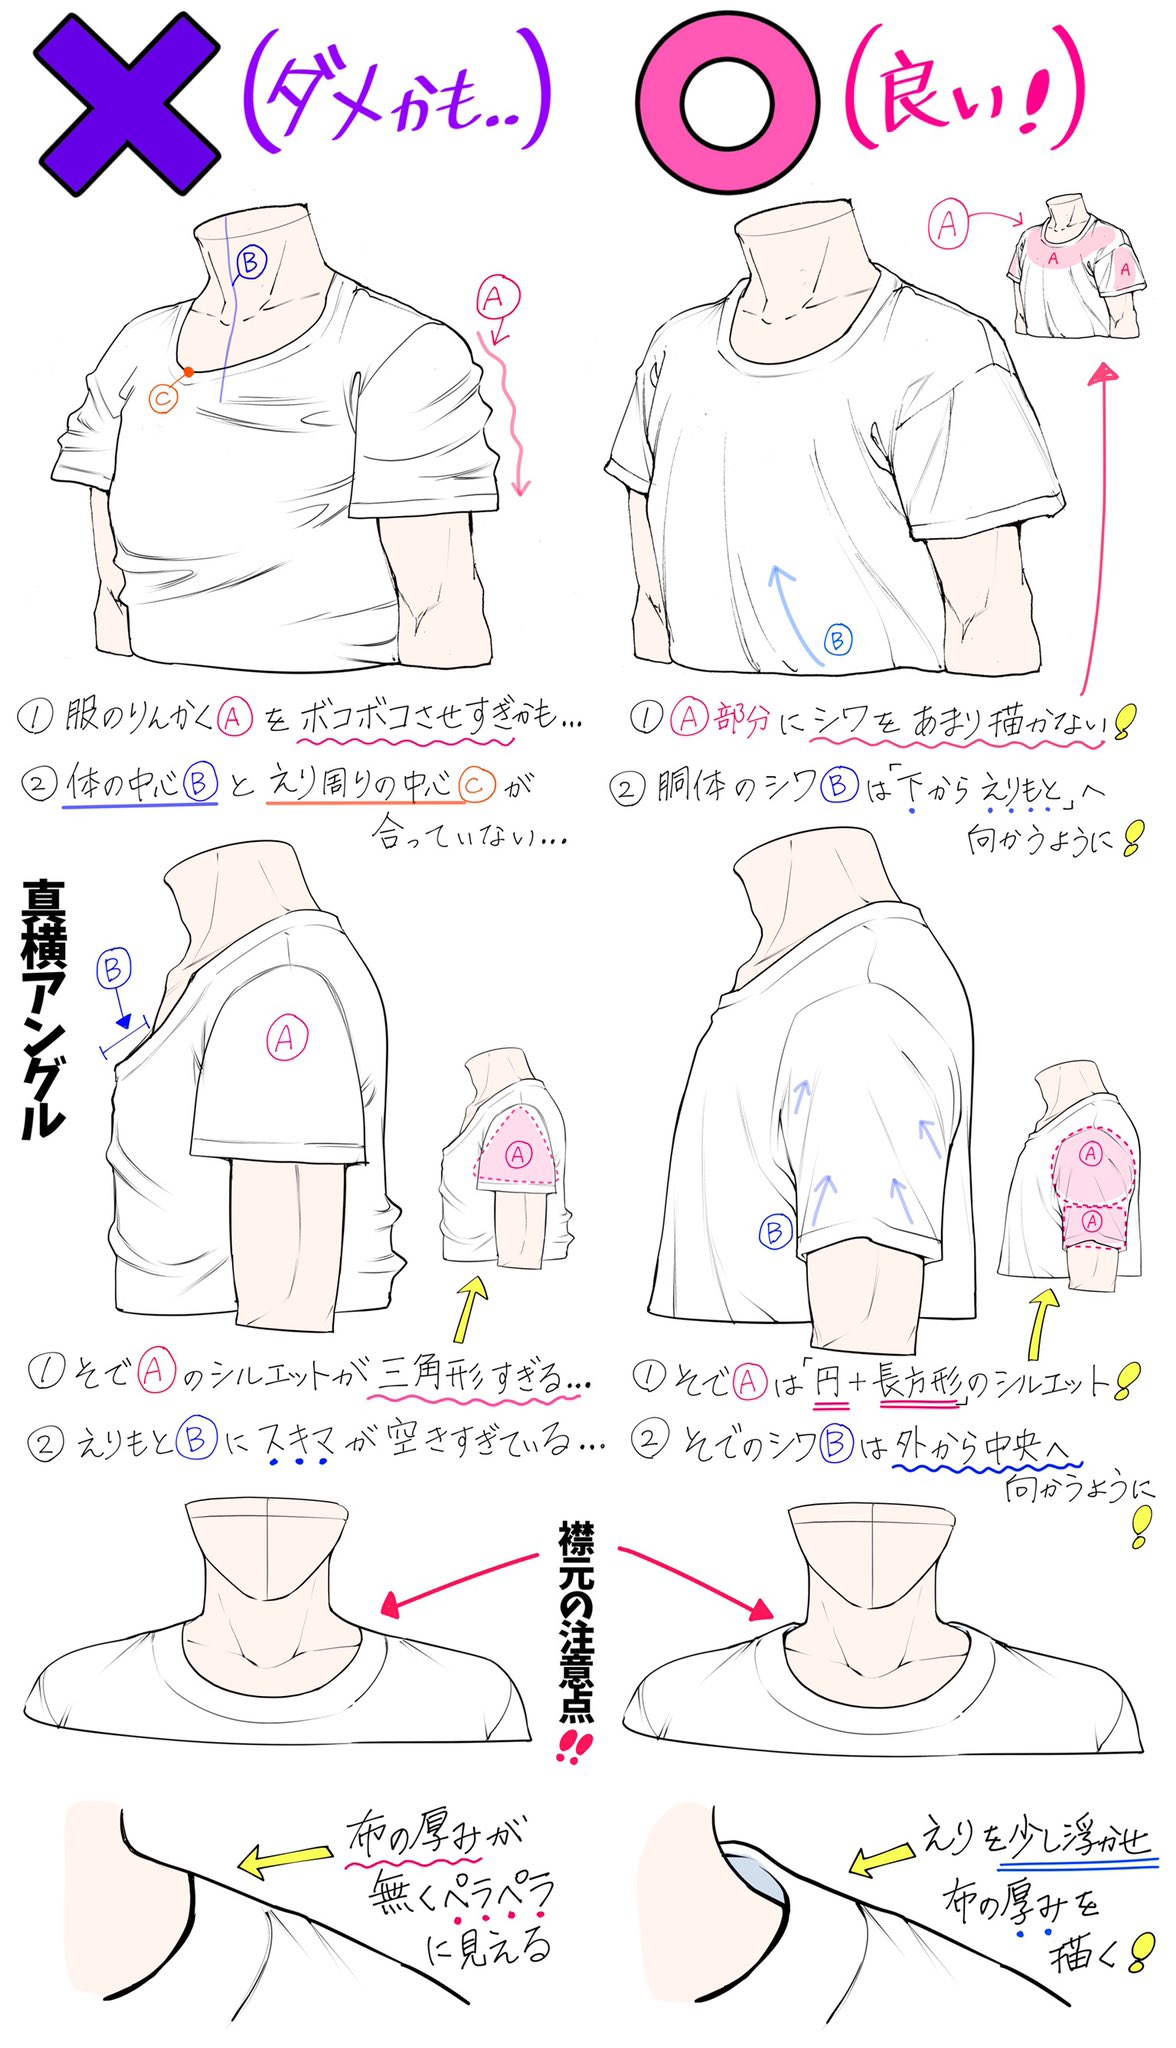 吉村拓也 イラスト講座 Tシャツの描き方 下手に見えやすいポイント 上手に見えやすいポイント T Co Wbexf4rvyp Twitter